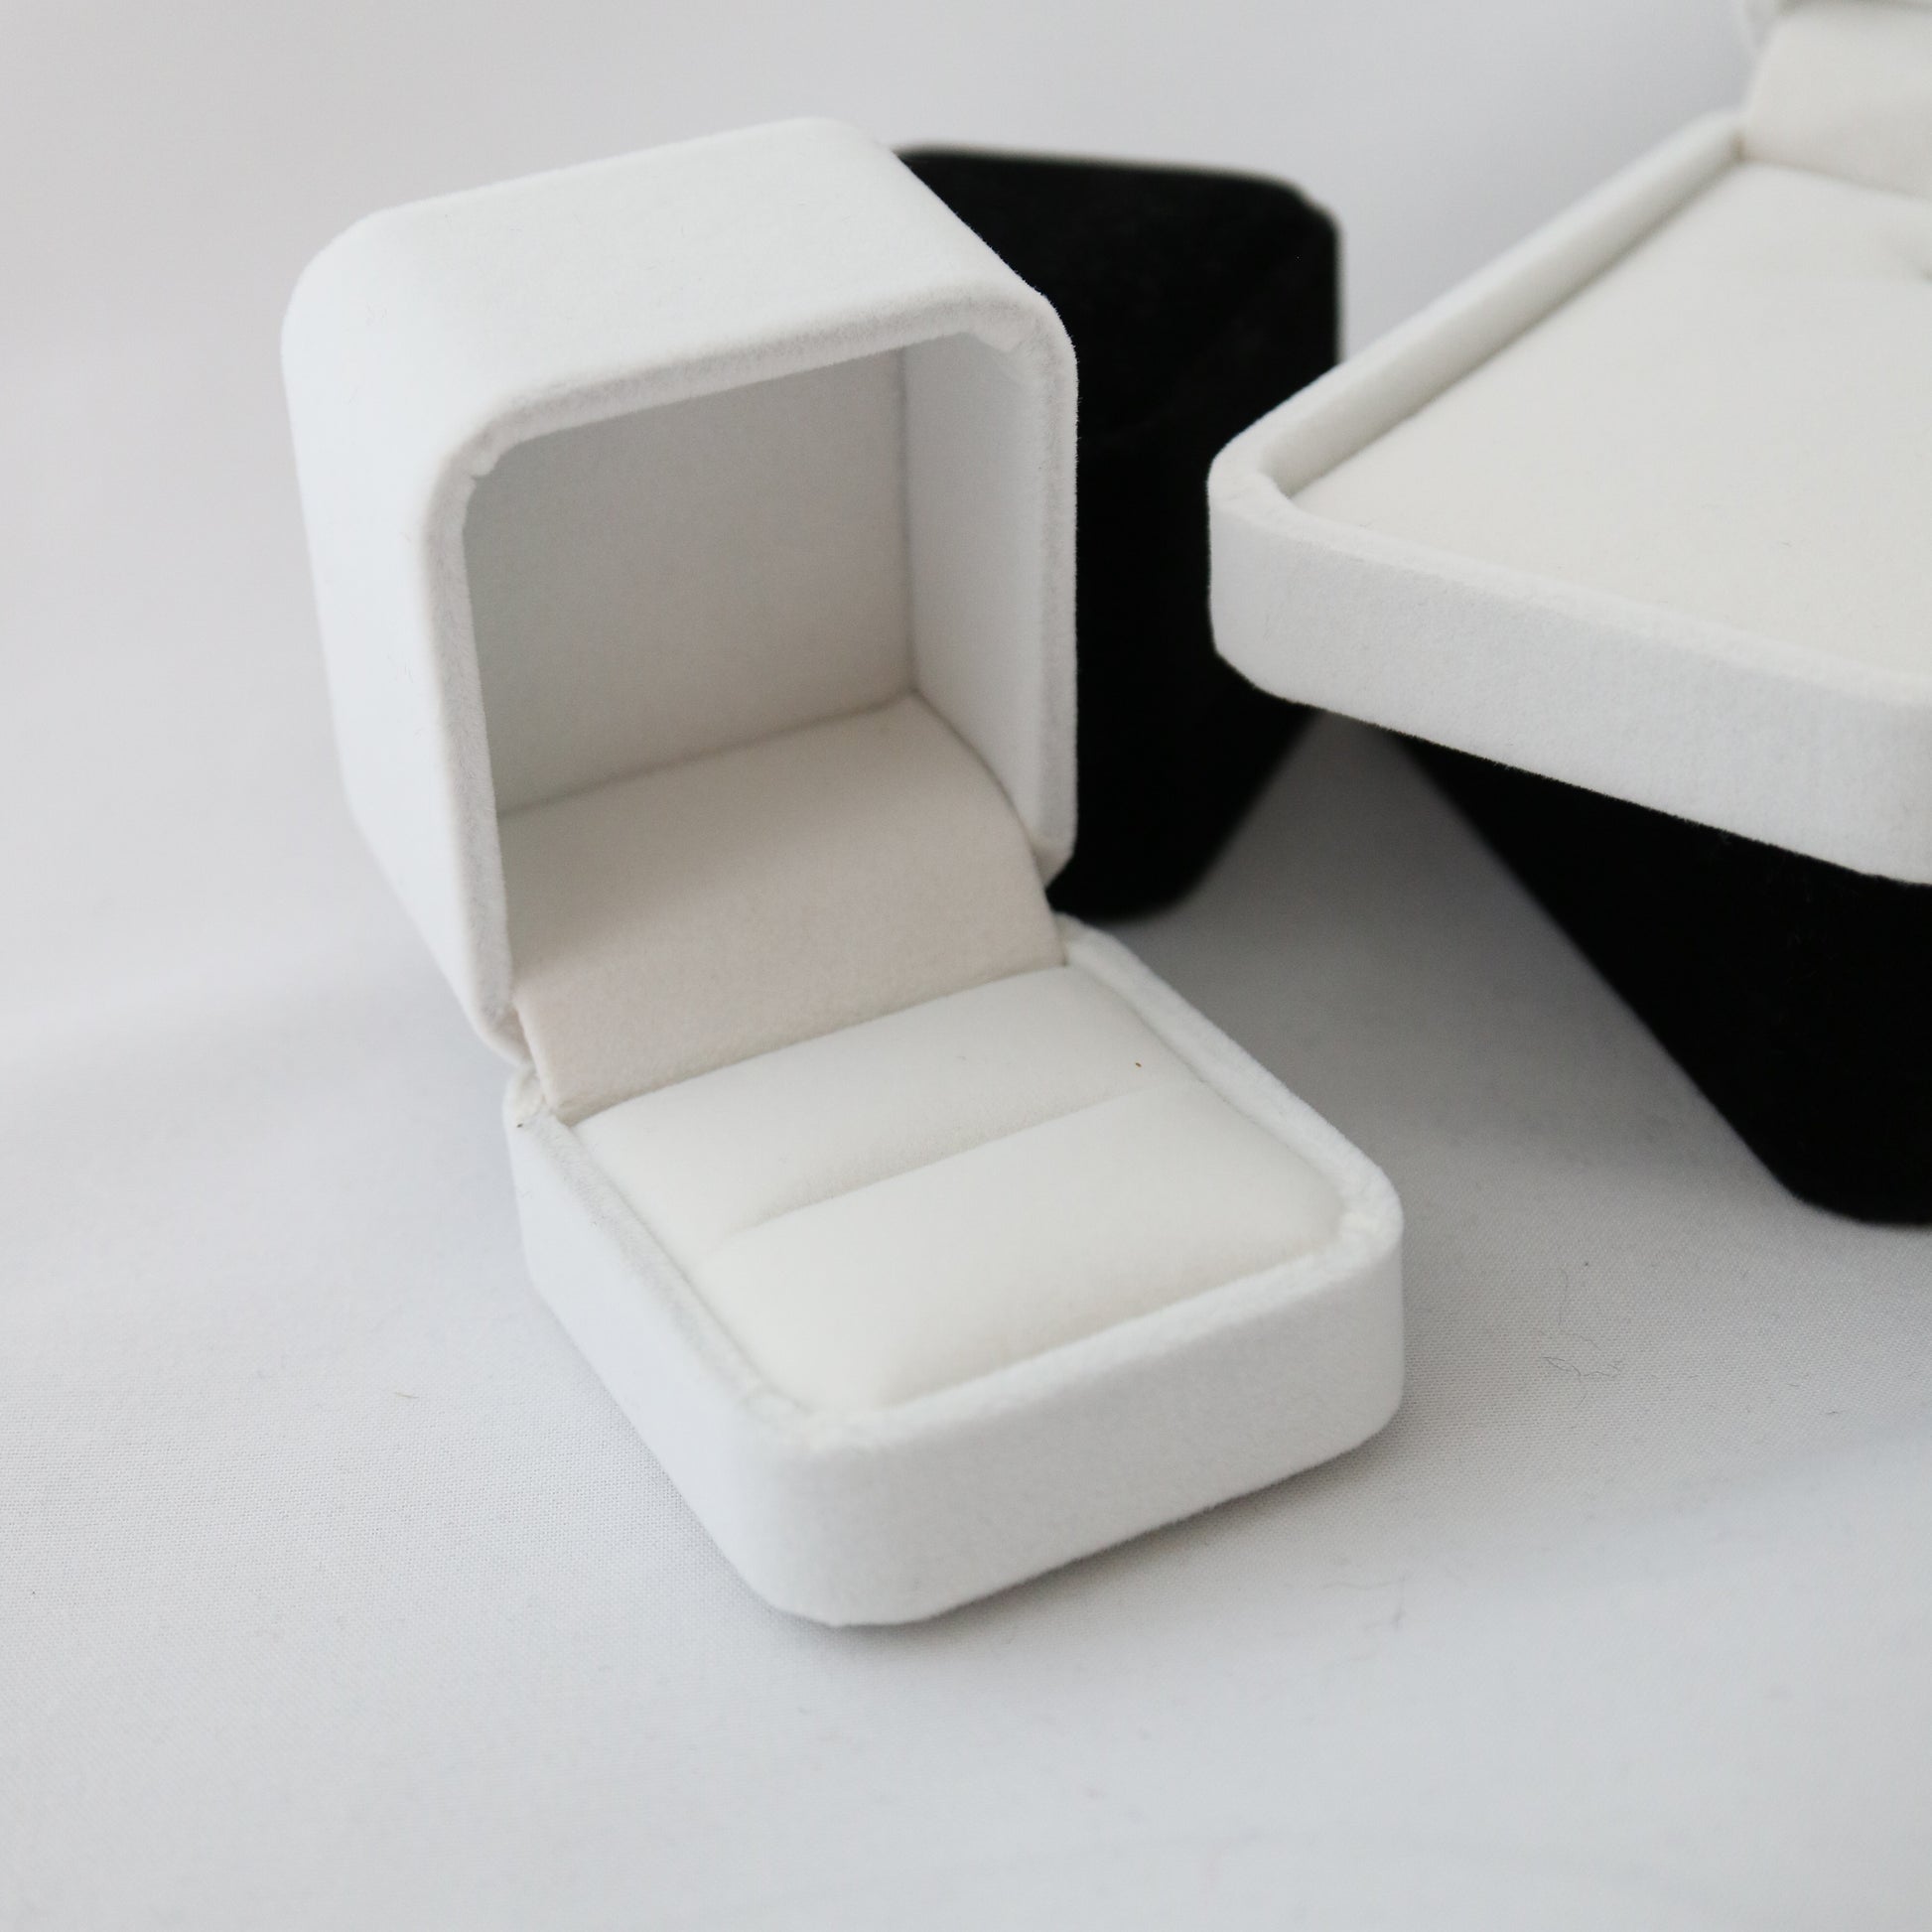 White velvet ring box